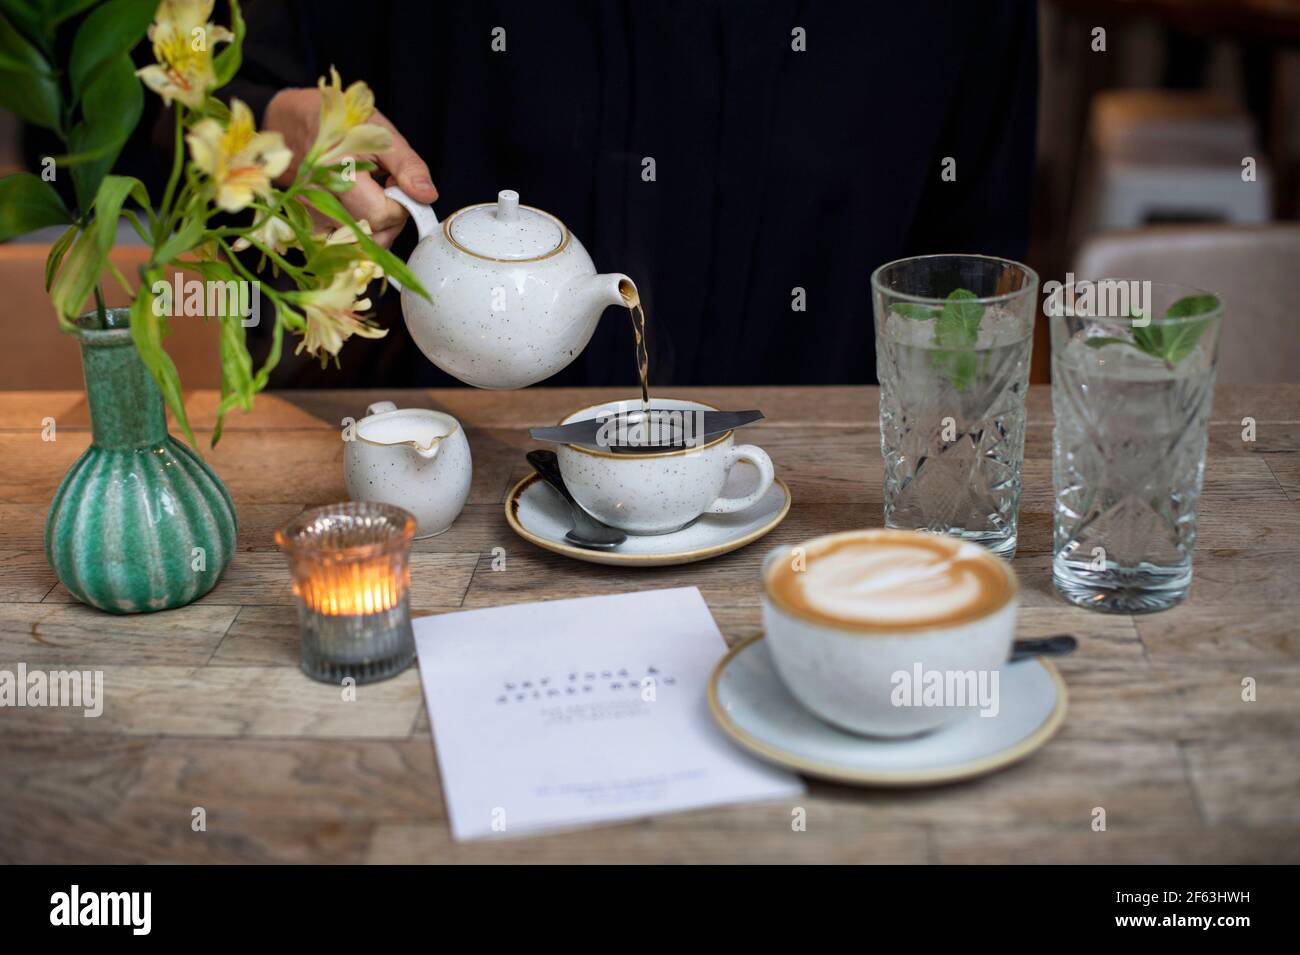 Weibliche Hand gießt Tee aus einer Teekannen im Restaurant. Lifestyle, Afternoon-Tea-Konzept. Leeres Papiermenü mit Kopierbereich. London, Großbritannien Stockfoto